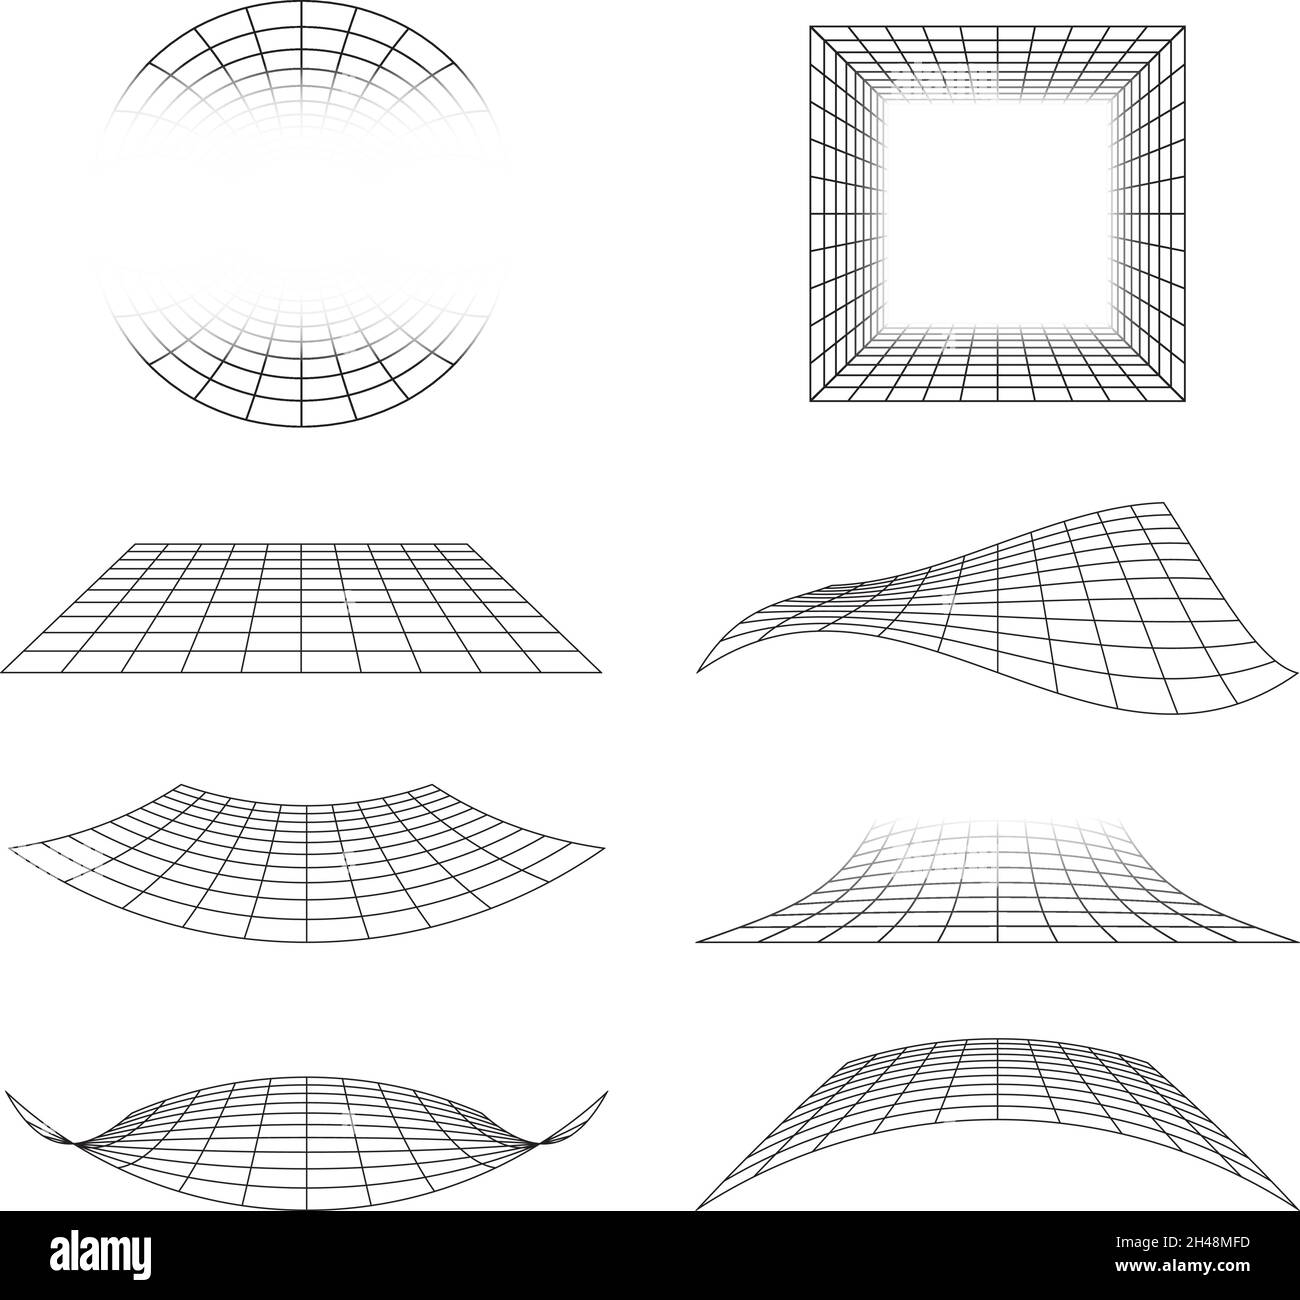 Griglia in prospettiva. superficie linea 3d delle piastrelle del pavimento orizzonte forme geometriche modello griglia stilizzato vettoriale garish Illustrazione Vettoriale